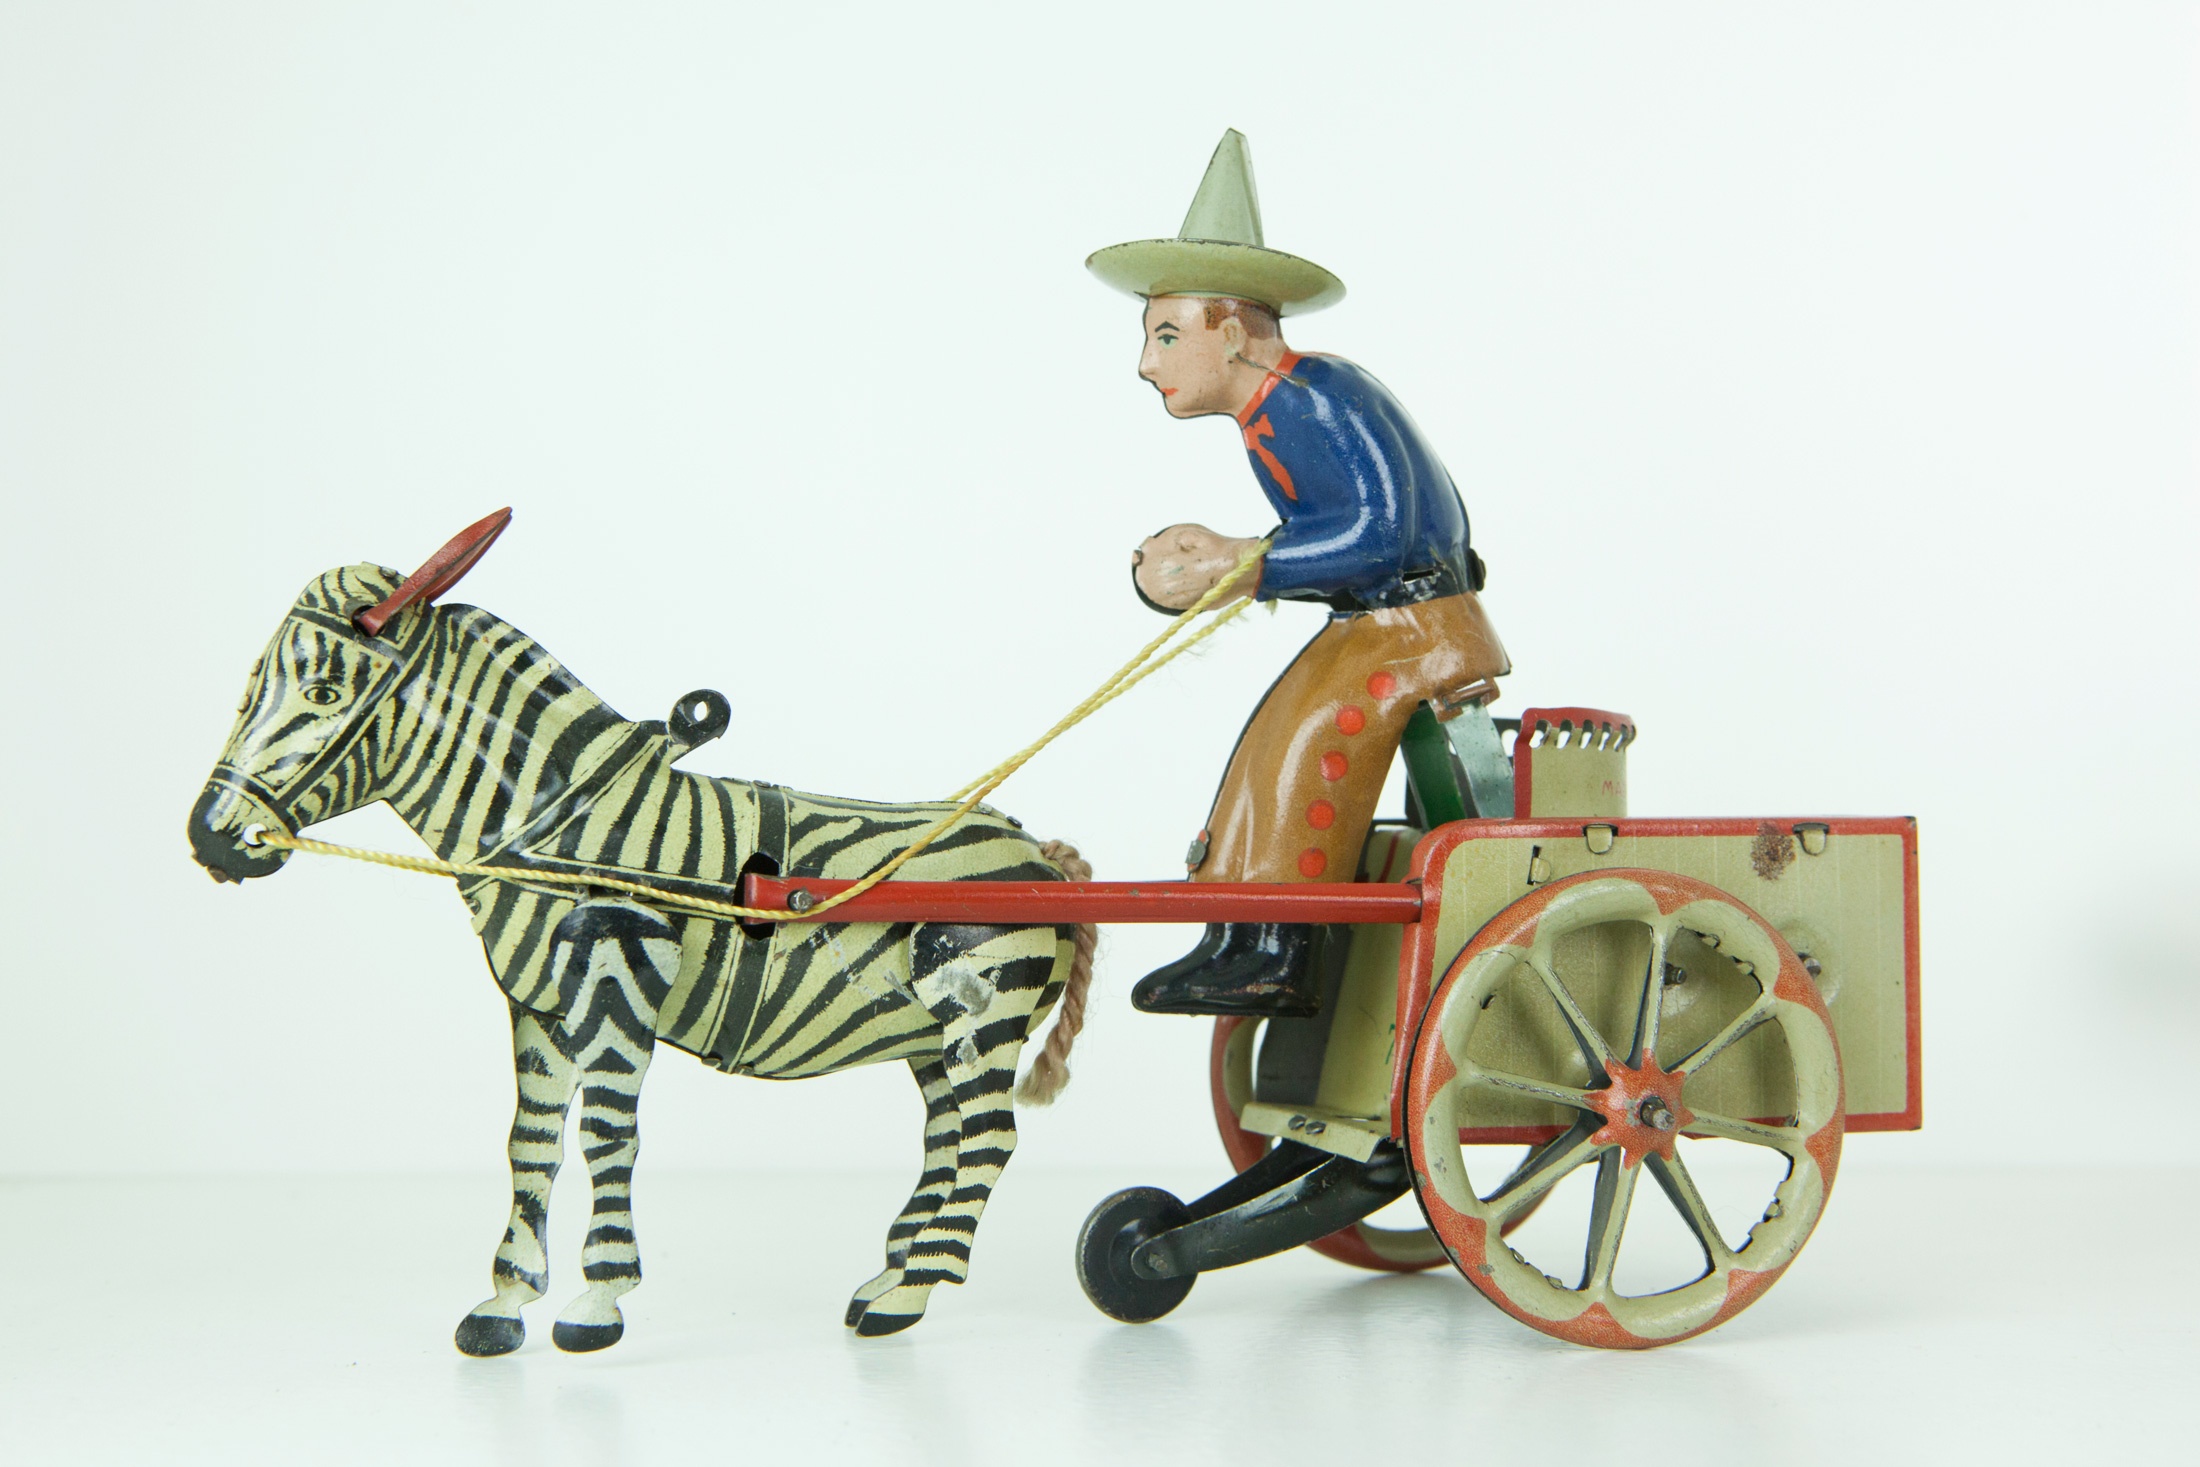 Lehmann "Zikra" Zebra Kutsche (Das Kleine Museum - Spielzeug aus zwei Jahrhunderten CC BY)